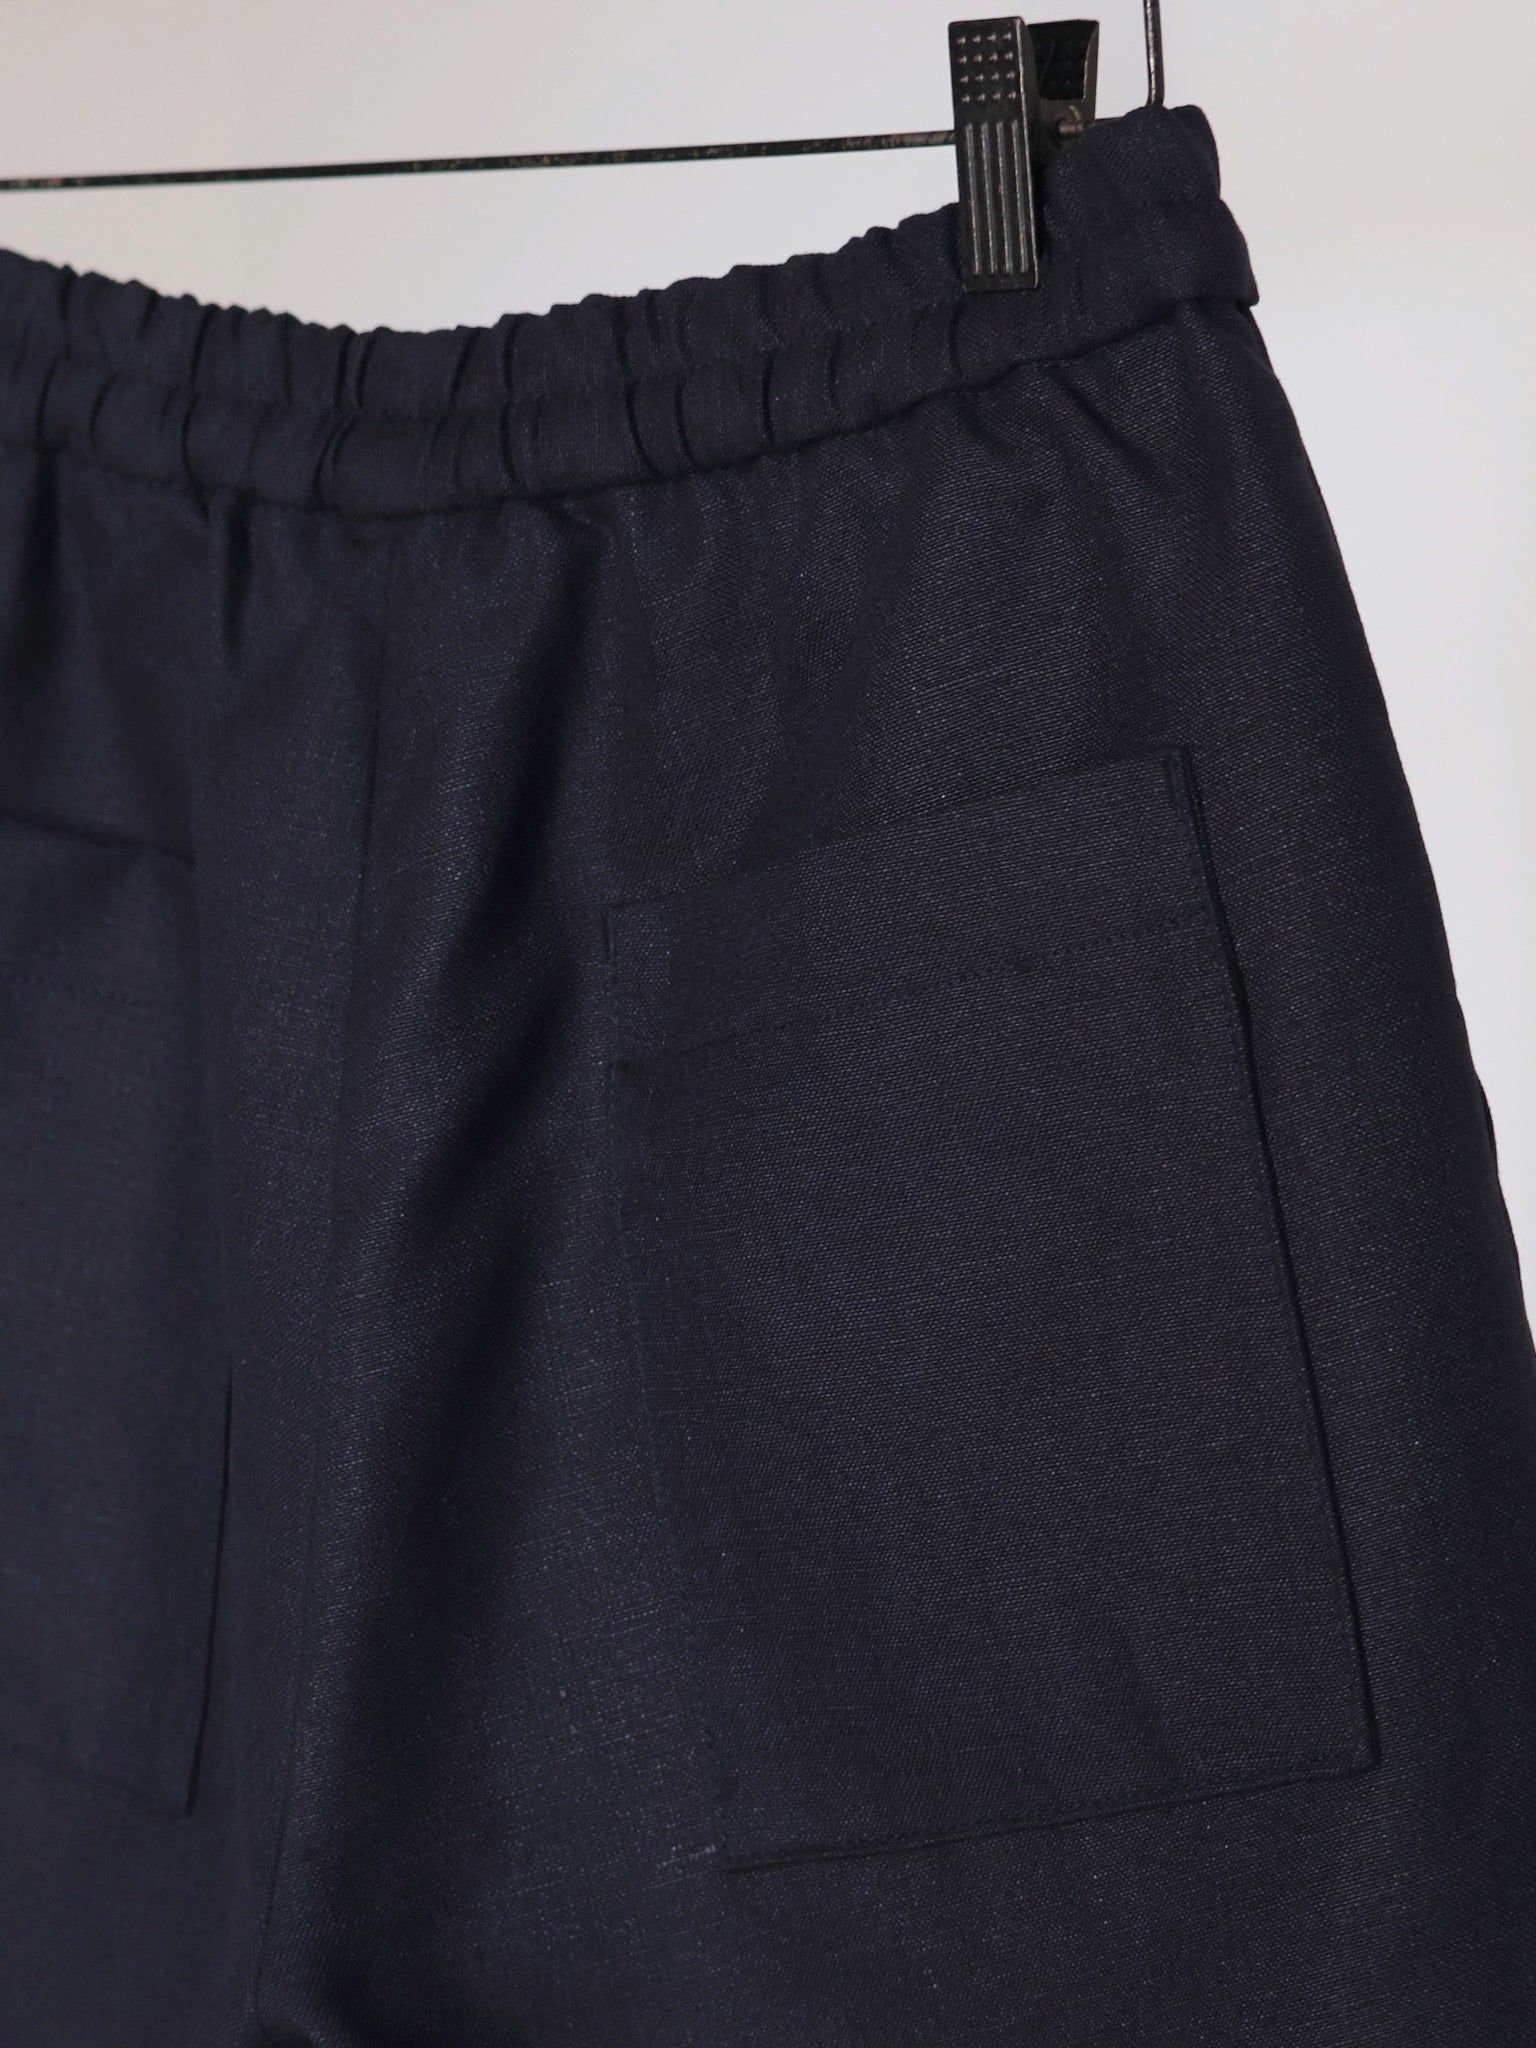 egretique-plain-linen-shorts-6